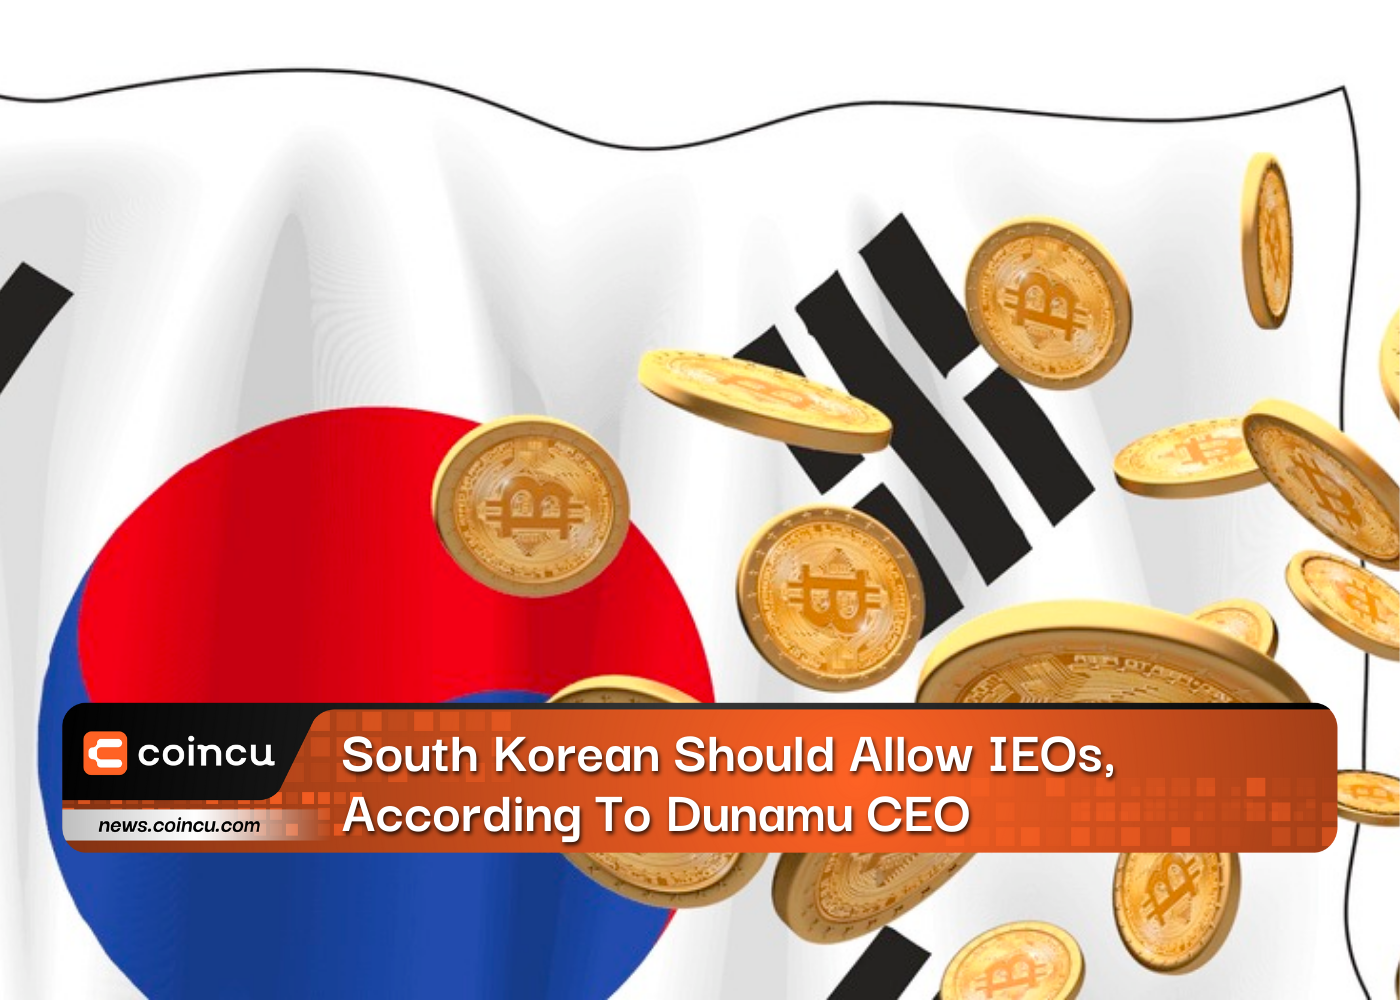 South Korea Should Allow IEOs, According To Dunamu CEO